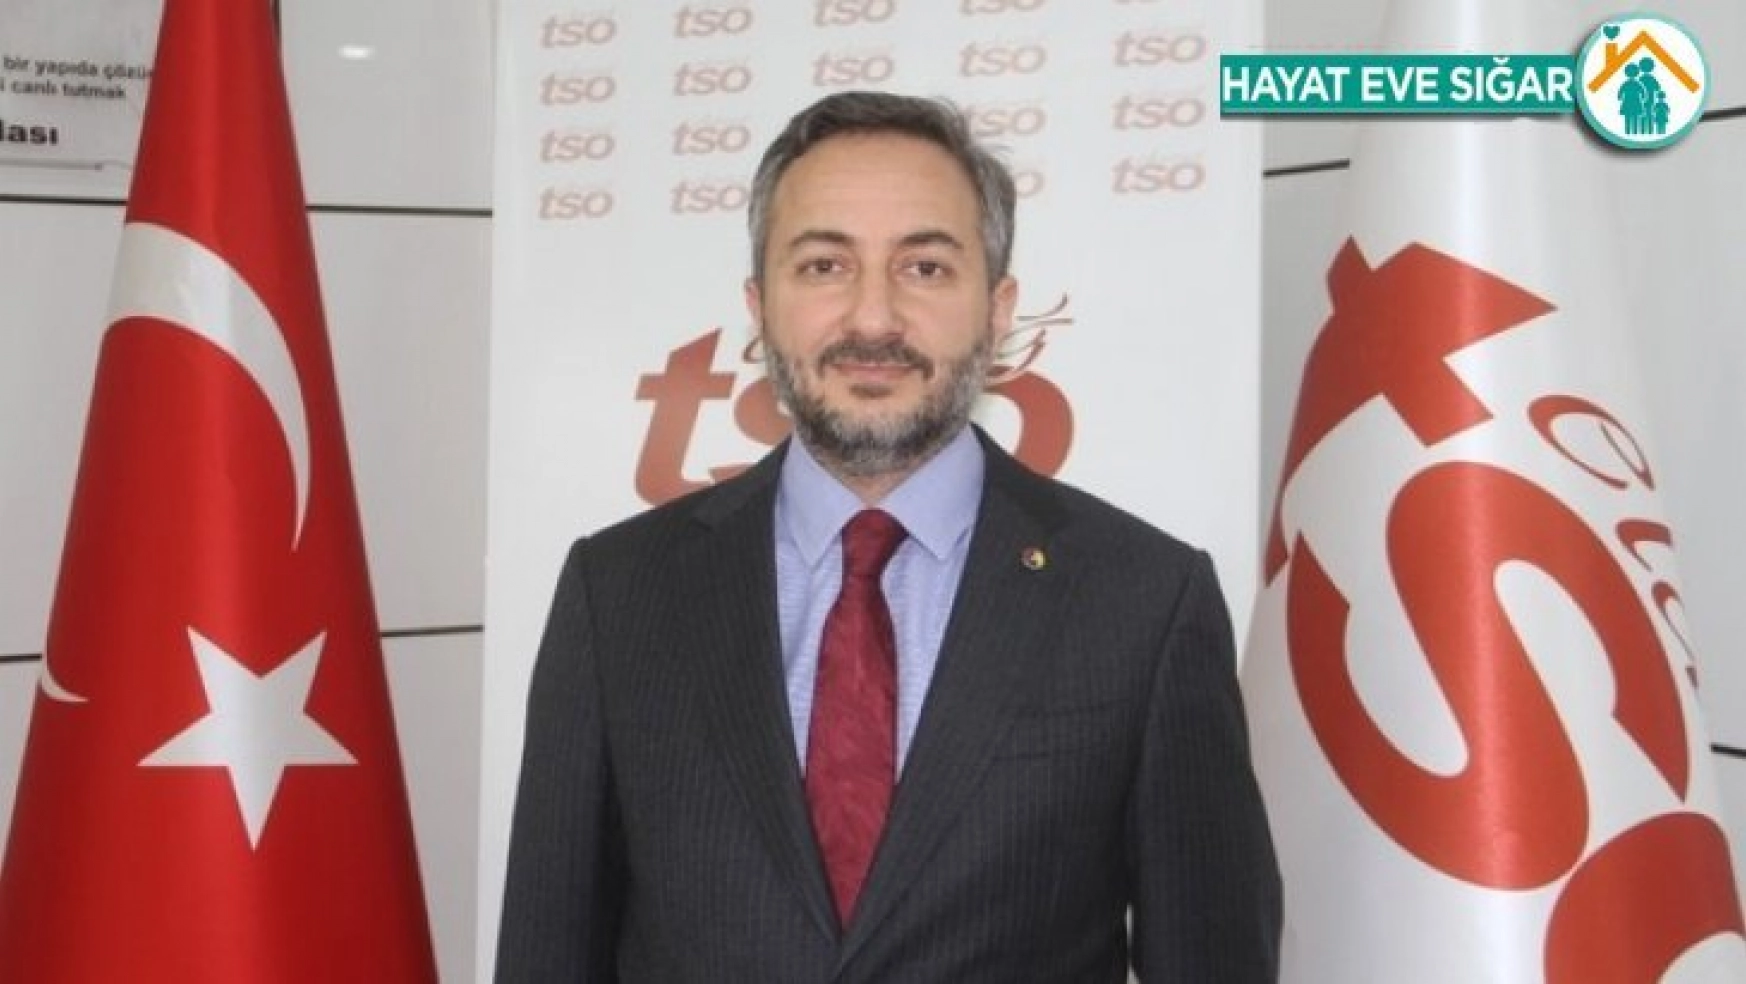 Elazığ TSO Başkanı Arslan,'Bankaları, Elazığlı firmalara daha pozitif bir ayrımcılık yapmaya çağırıyorum'